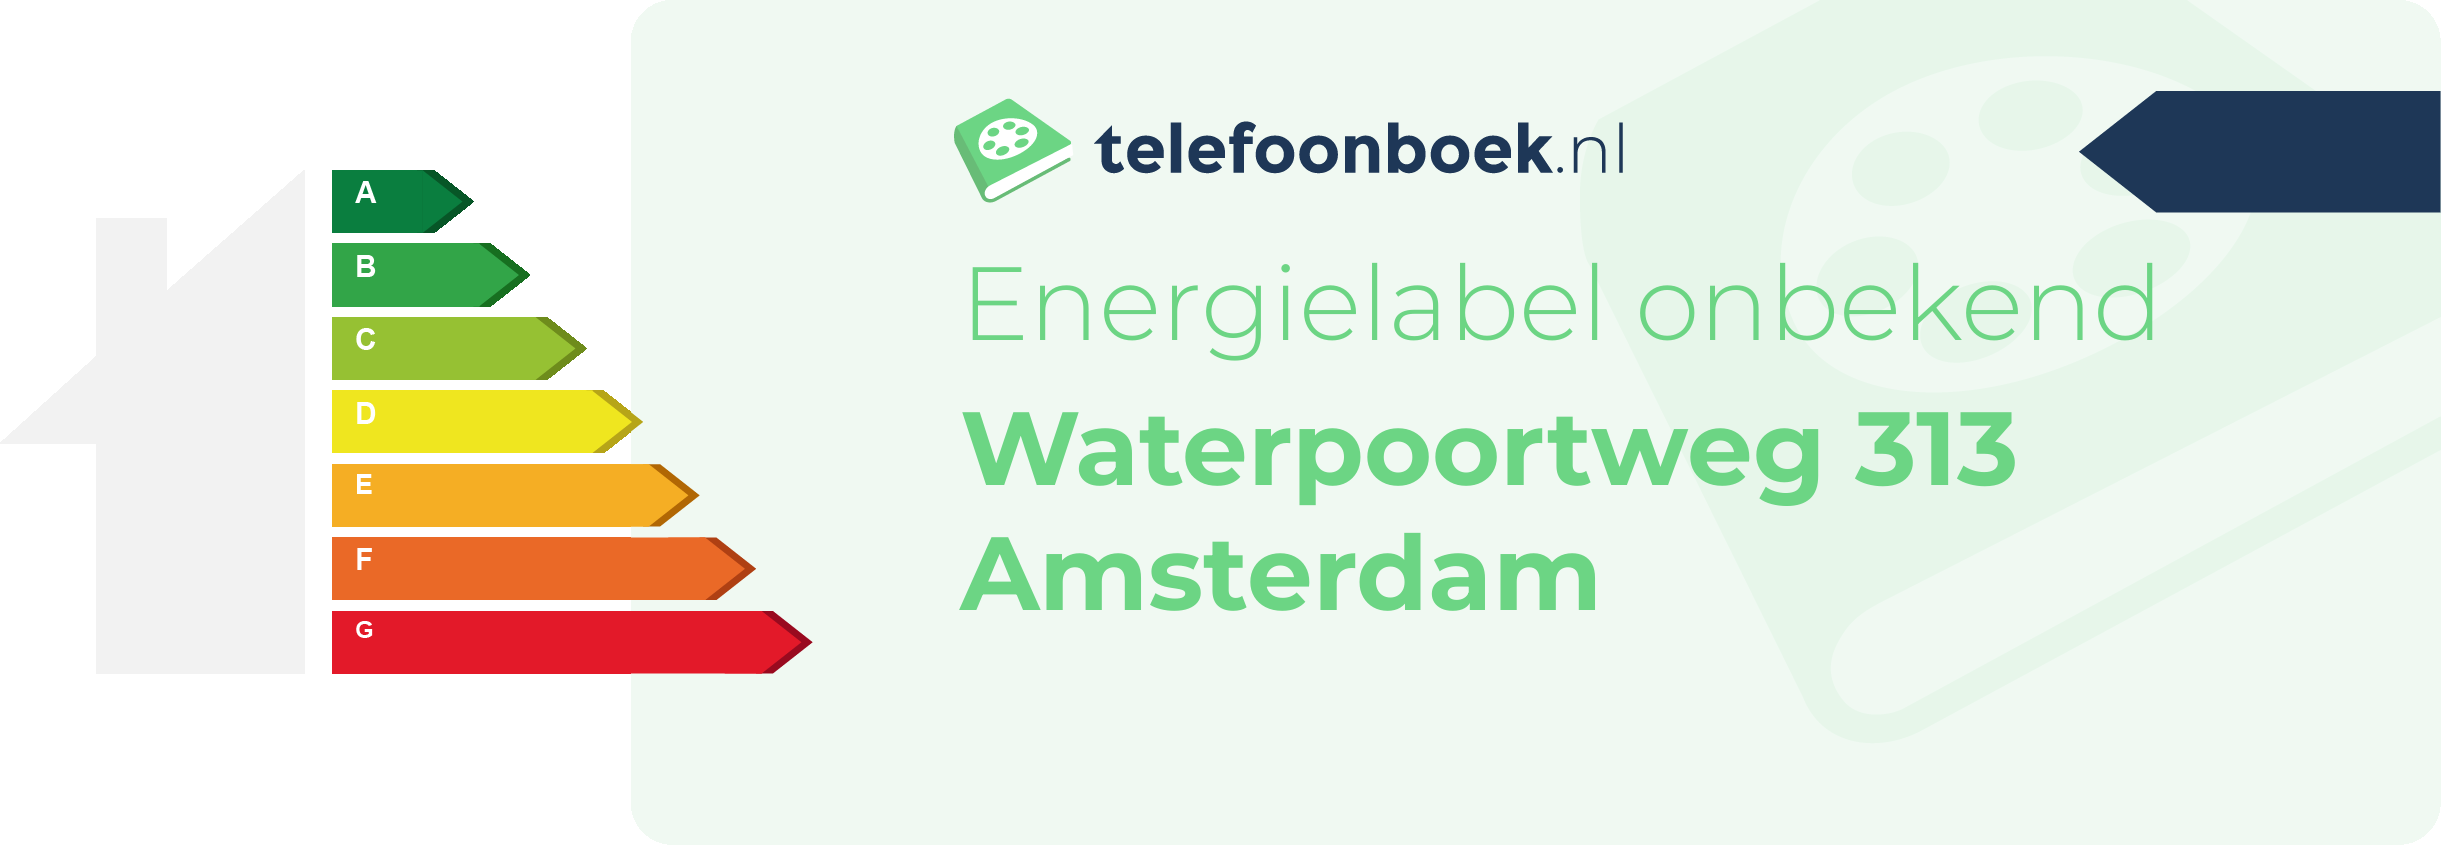 Energielabel Waterpoortweg 313 Amsterdam